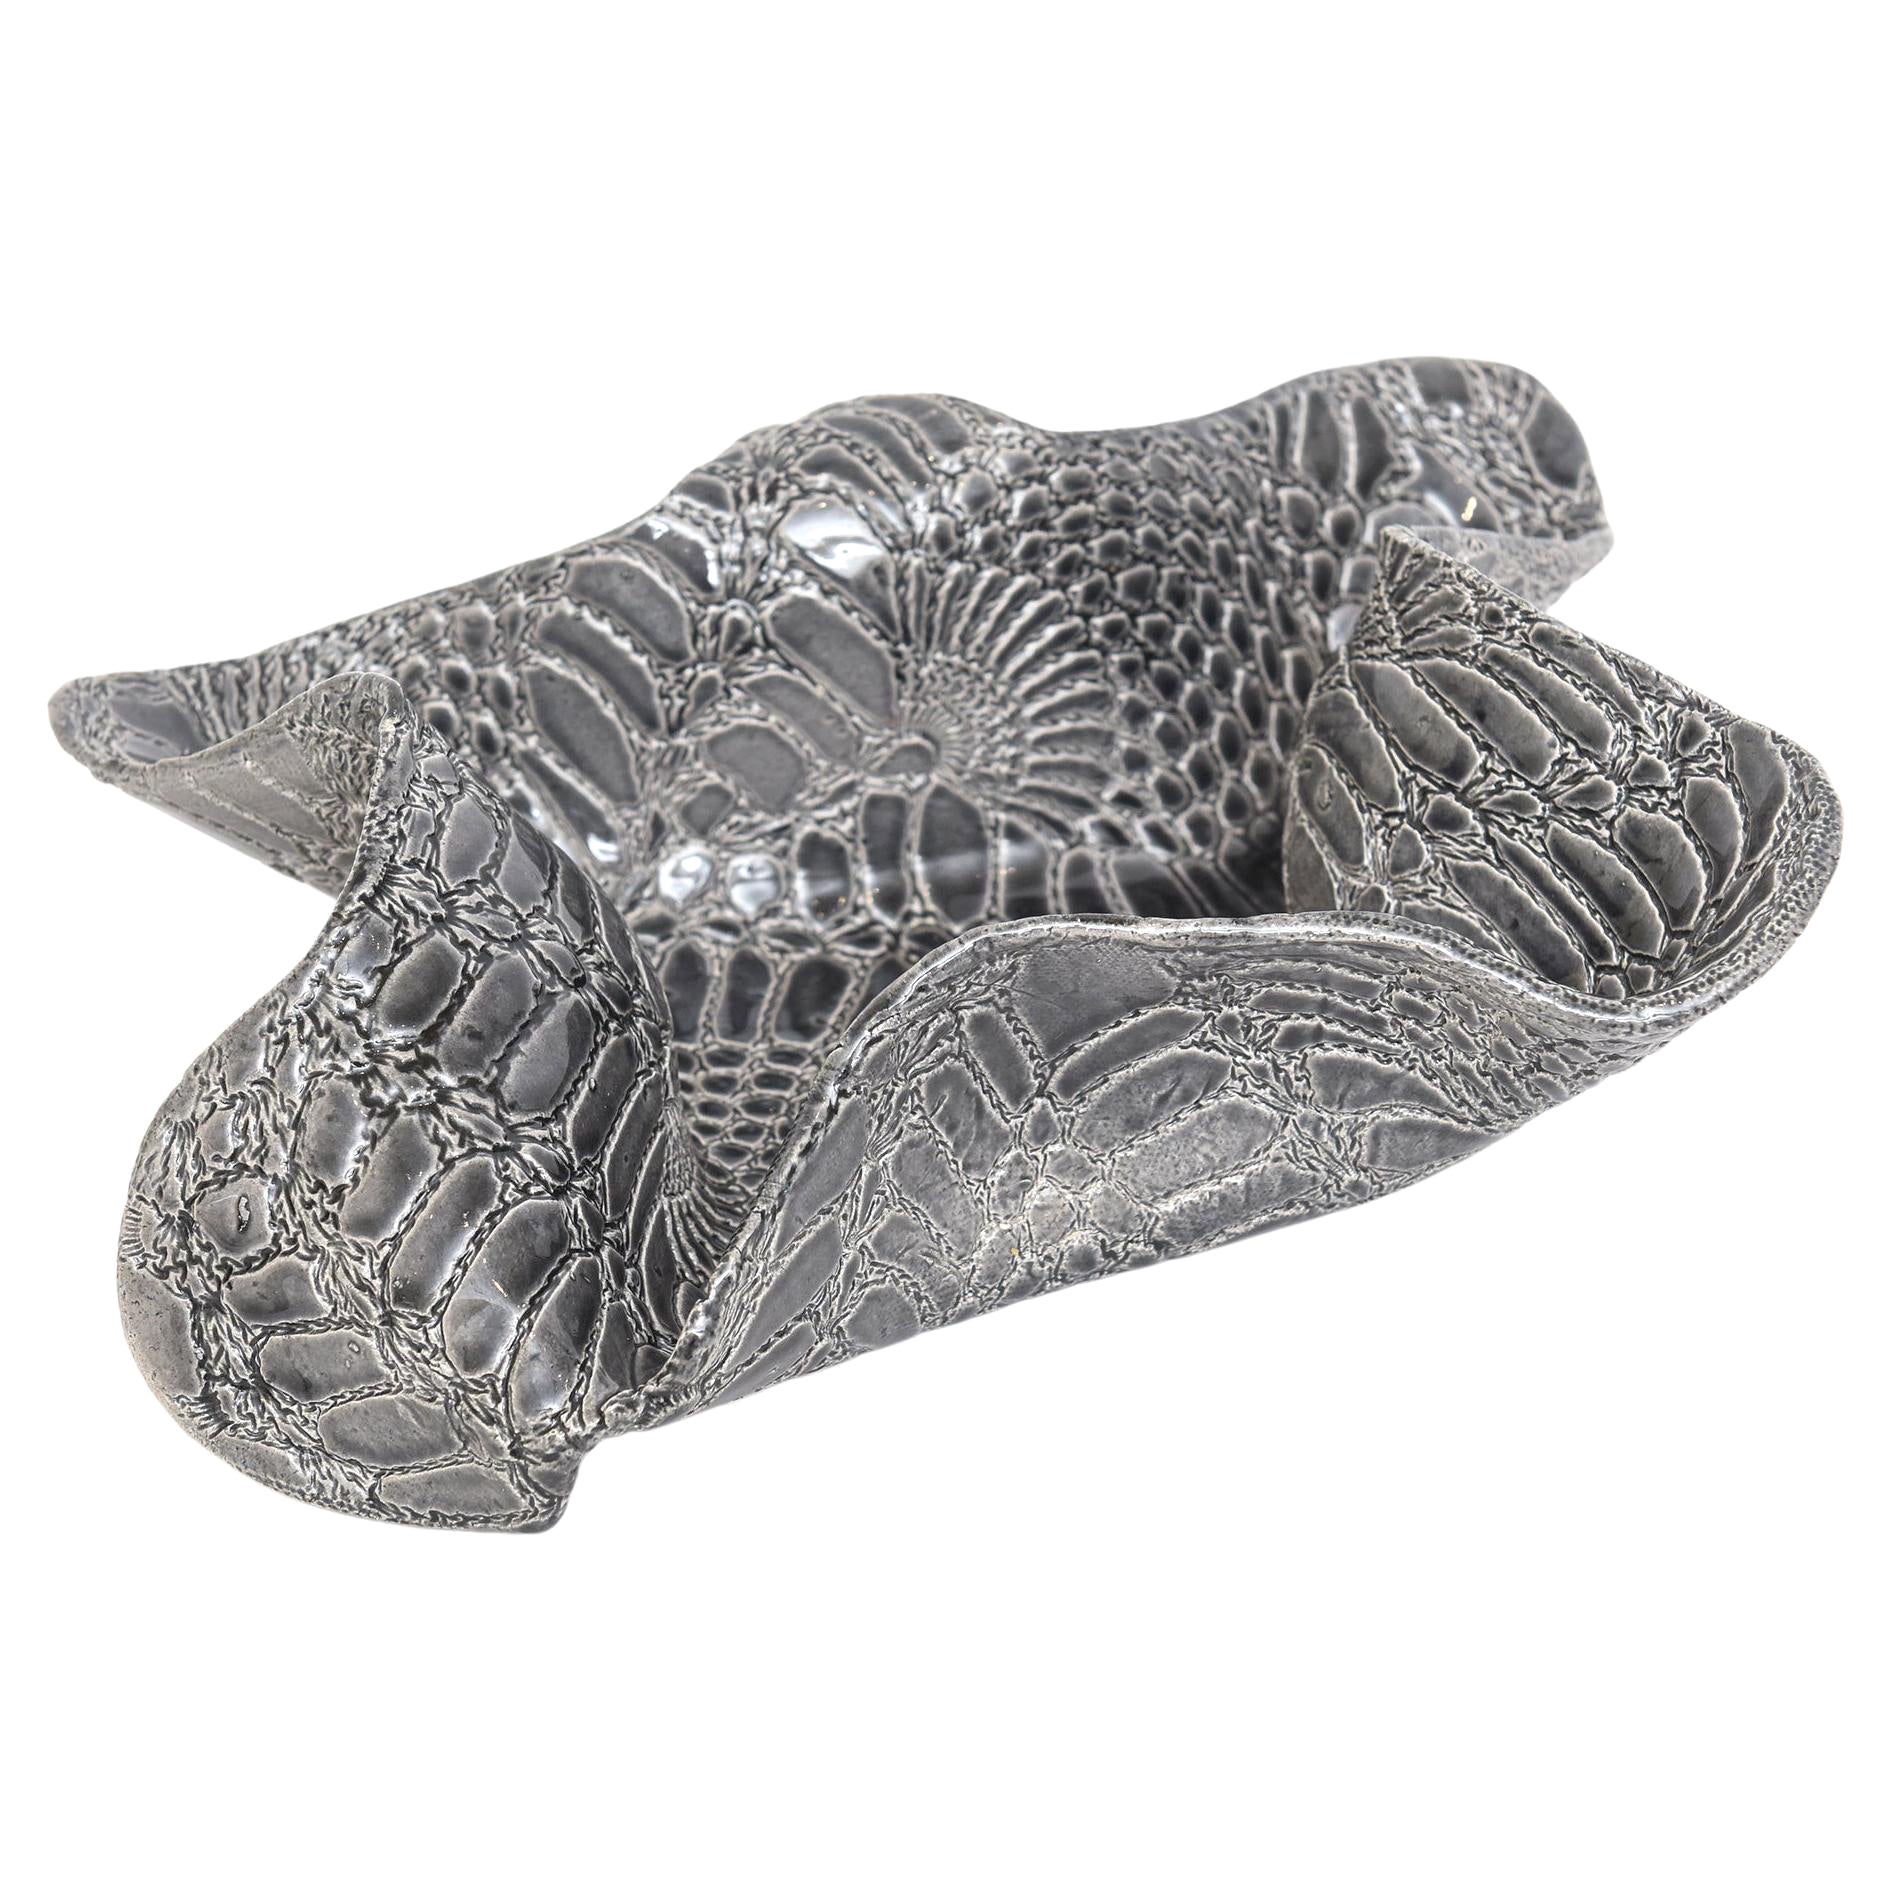 Bol sculptural biomorphique gris et blanc à motif peau de serpent texturé en vente